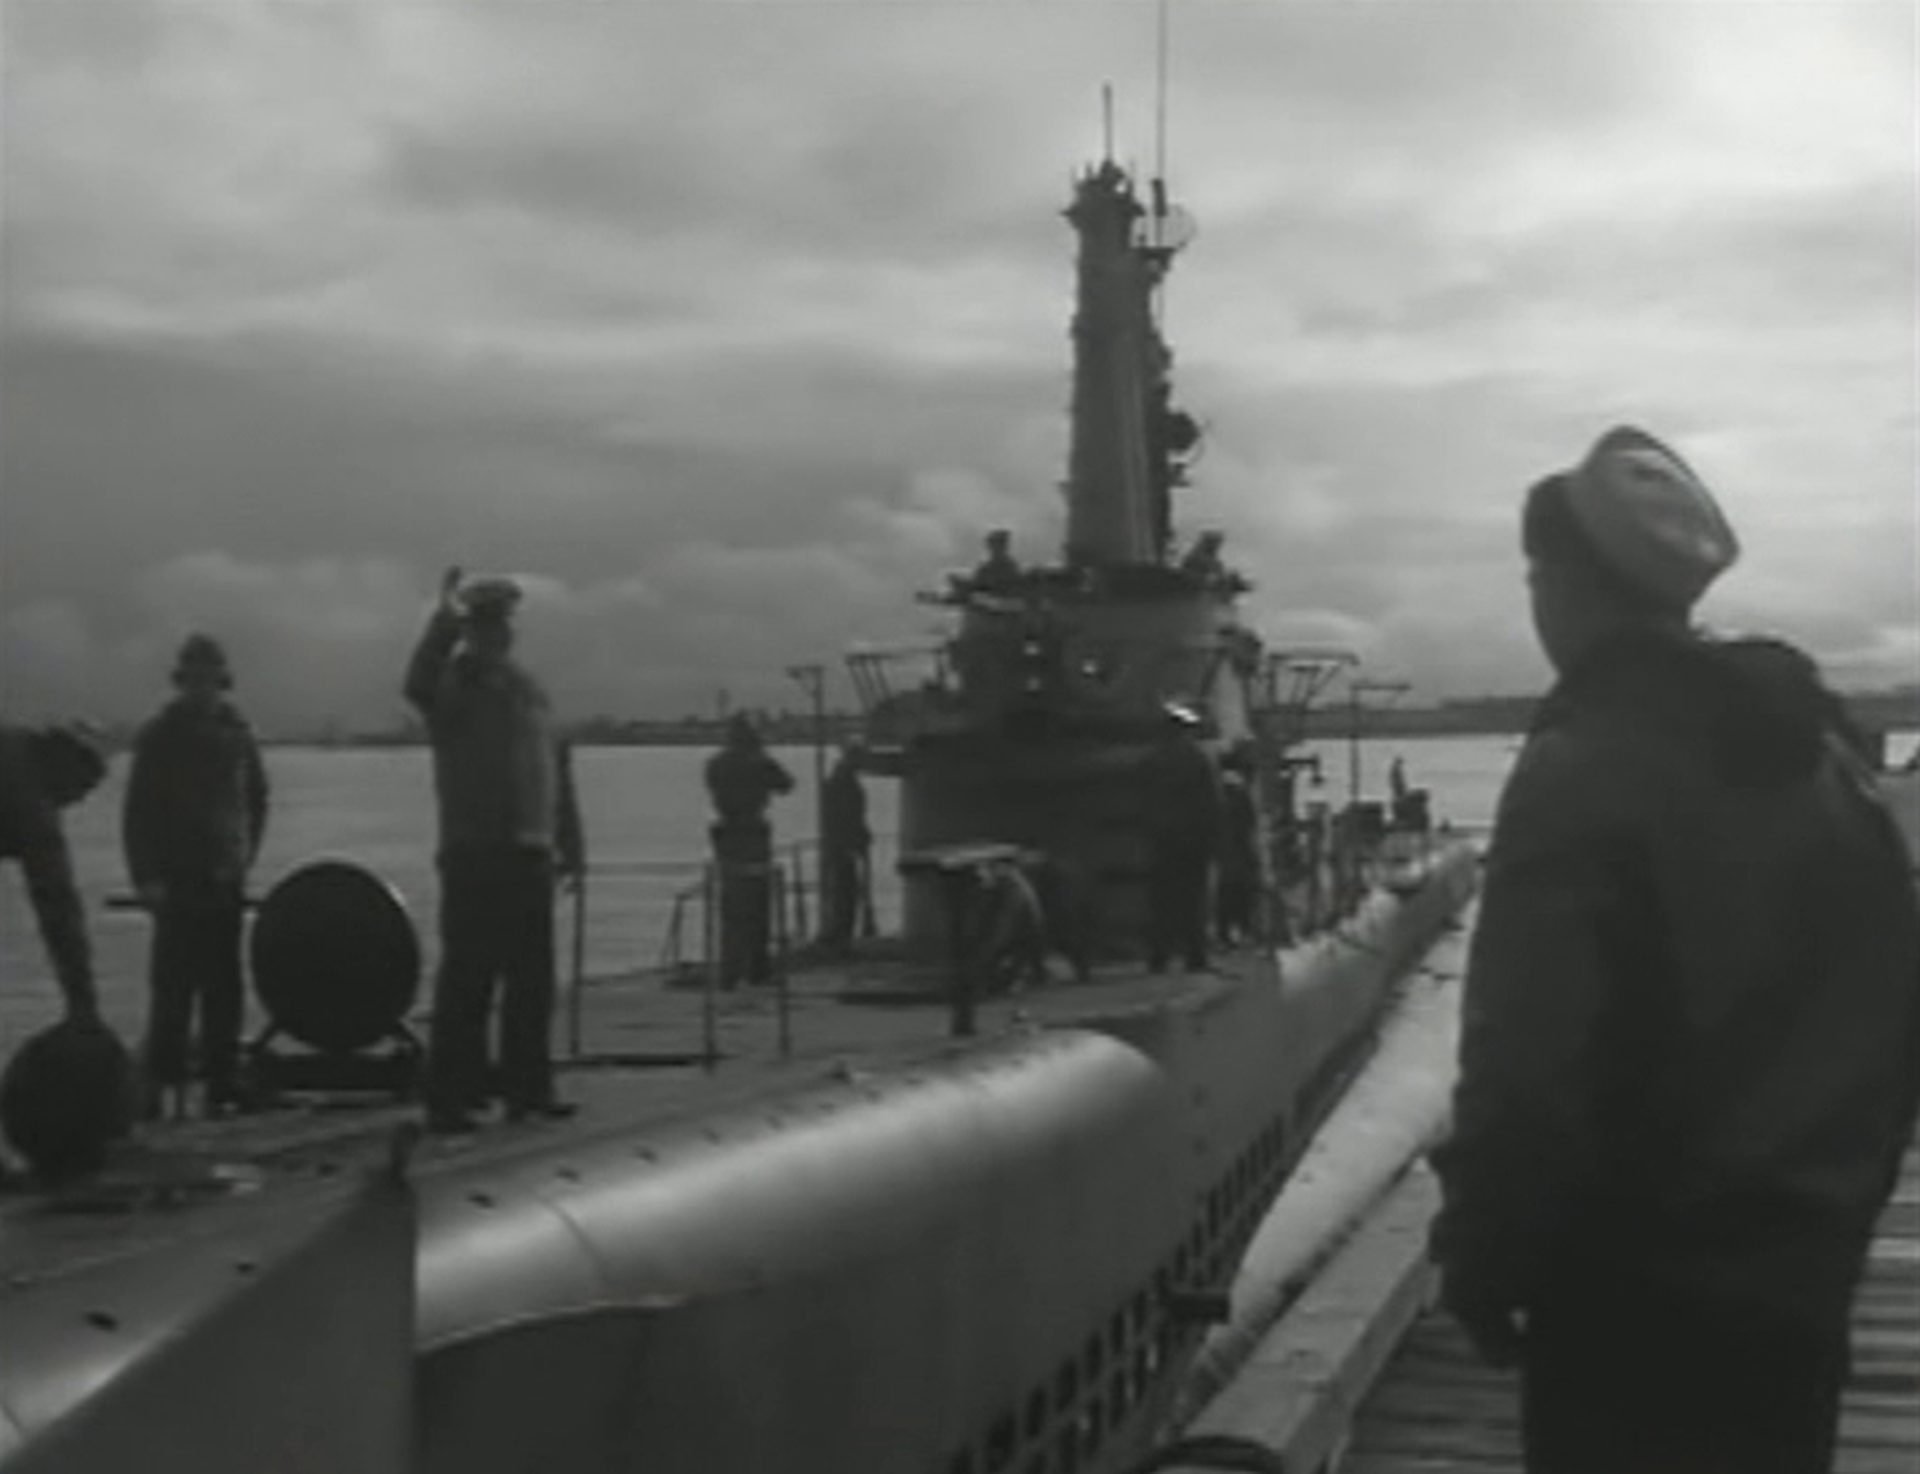 Schwarz-Weiß-Aufnahme eines Navy-U-Bootes beim Auslaufen, an Deck mehrere Seeleute, von denen einer winkt, am rechten Bildrand ein Matrose am Pier.